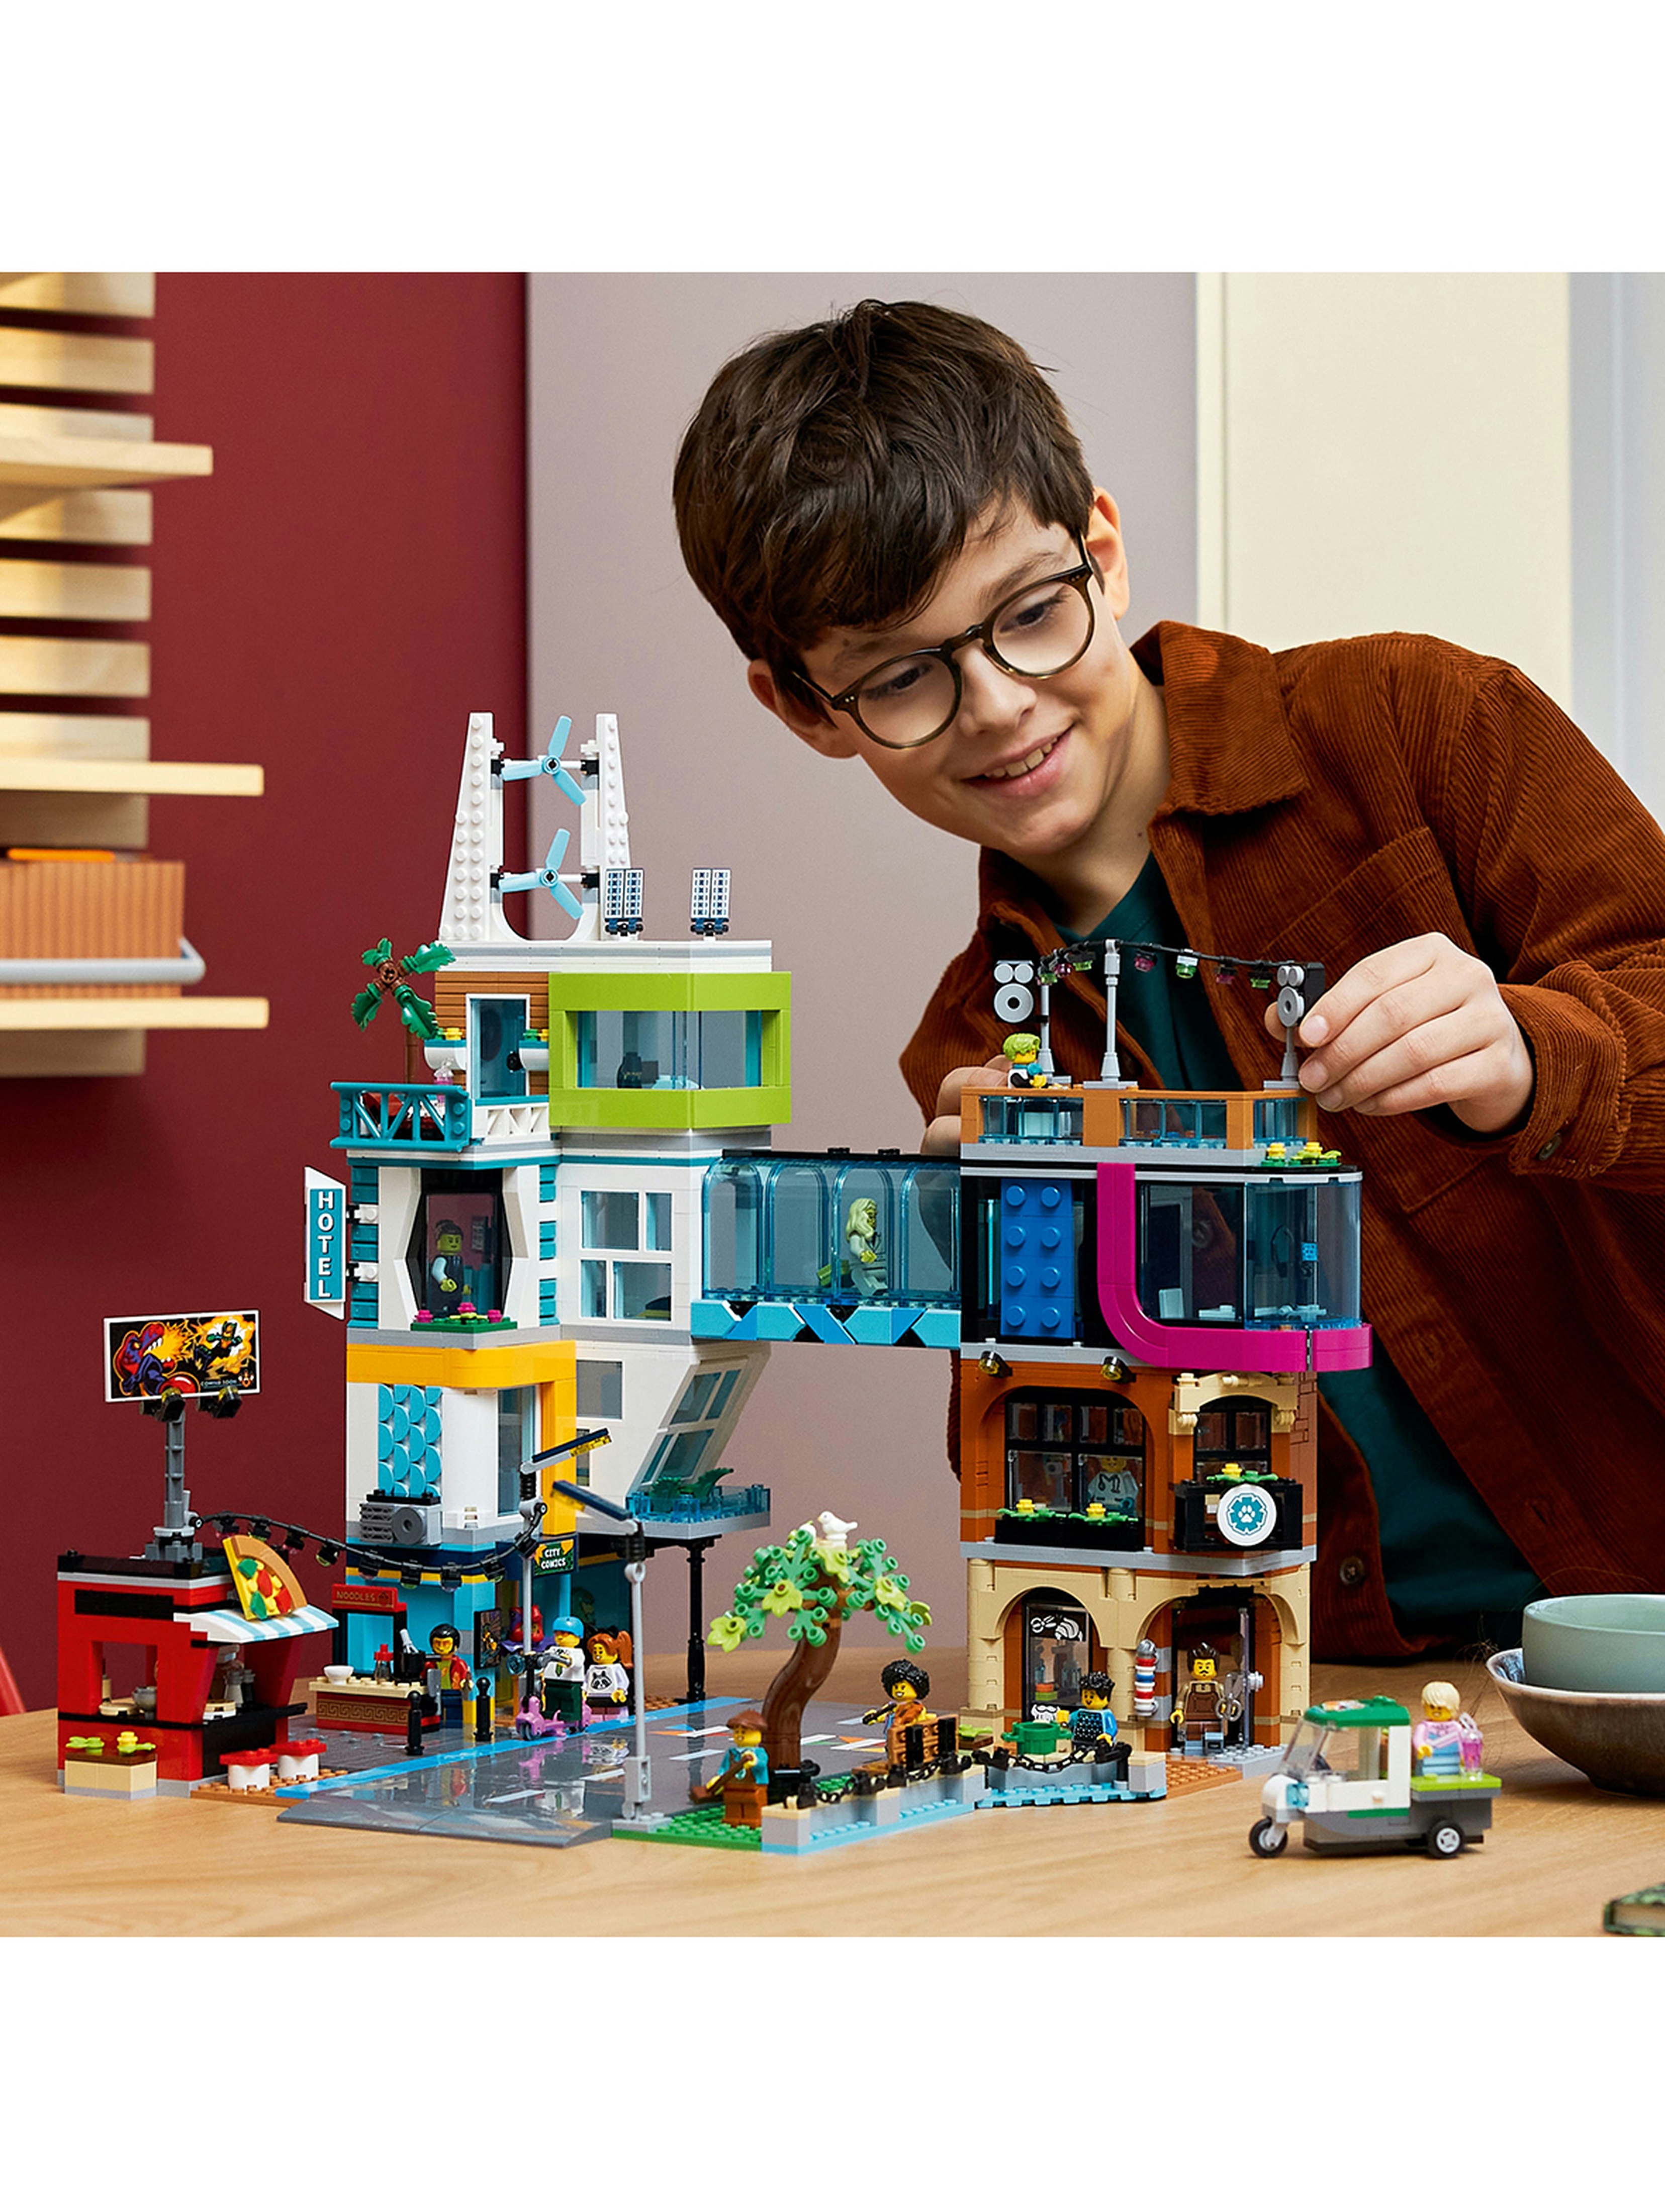 Klocki LEGO City 60380 Śródmieście - 2010 elementów, wiek 8 +